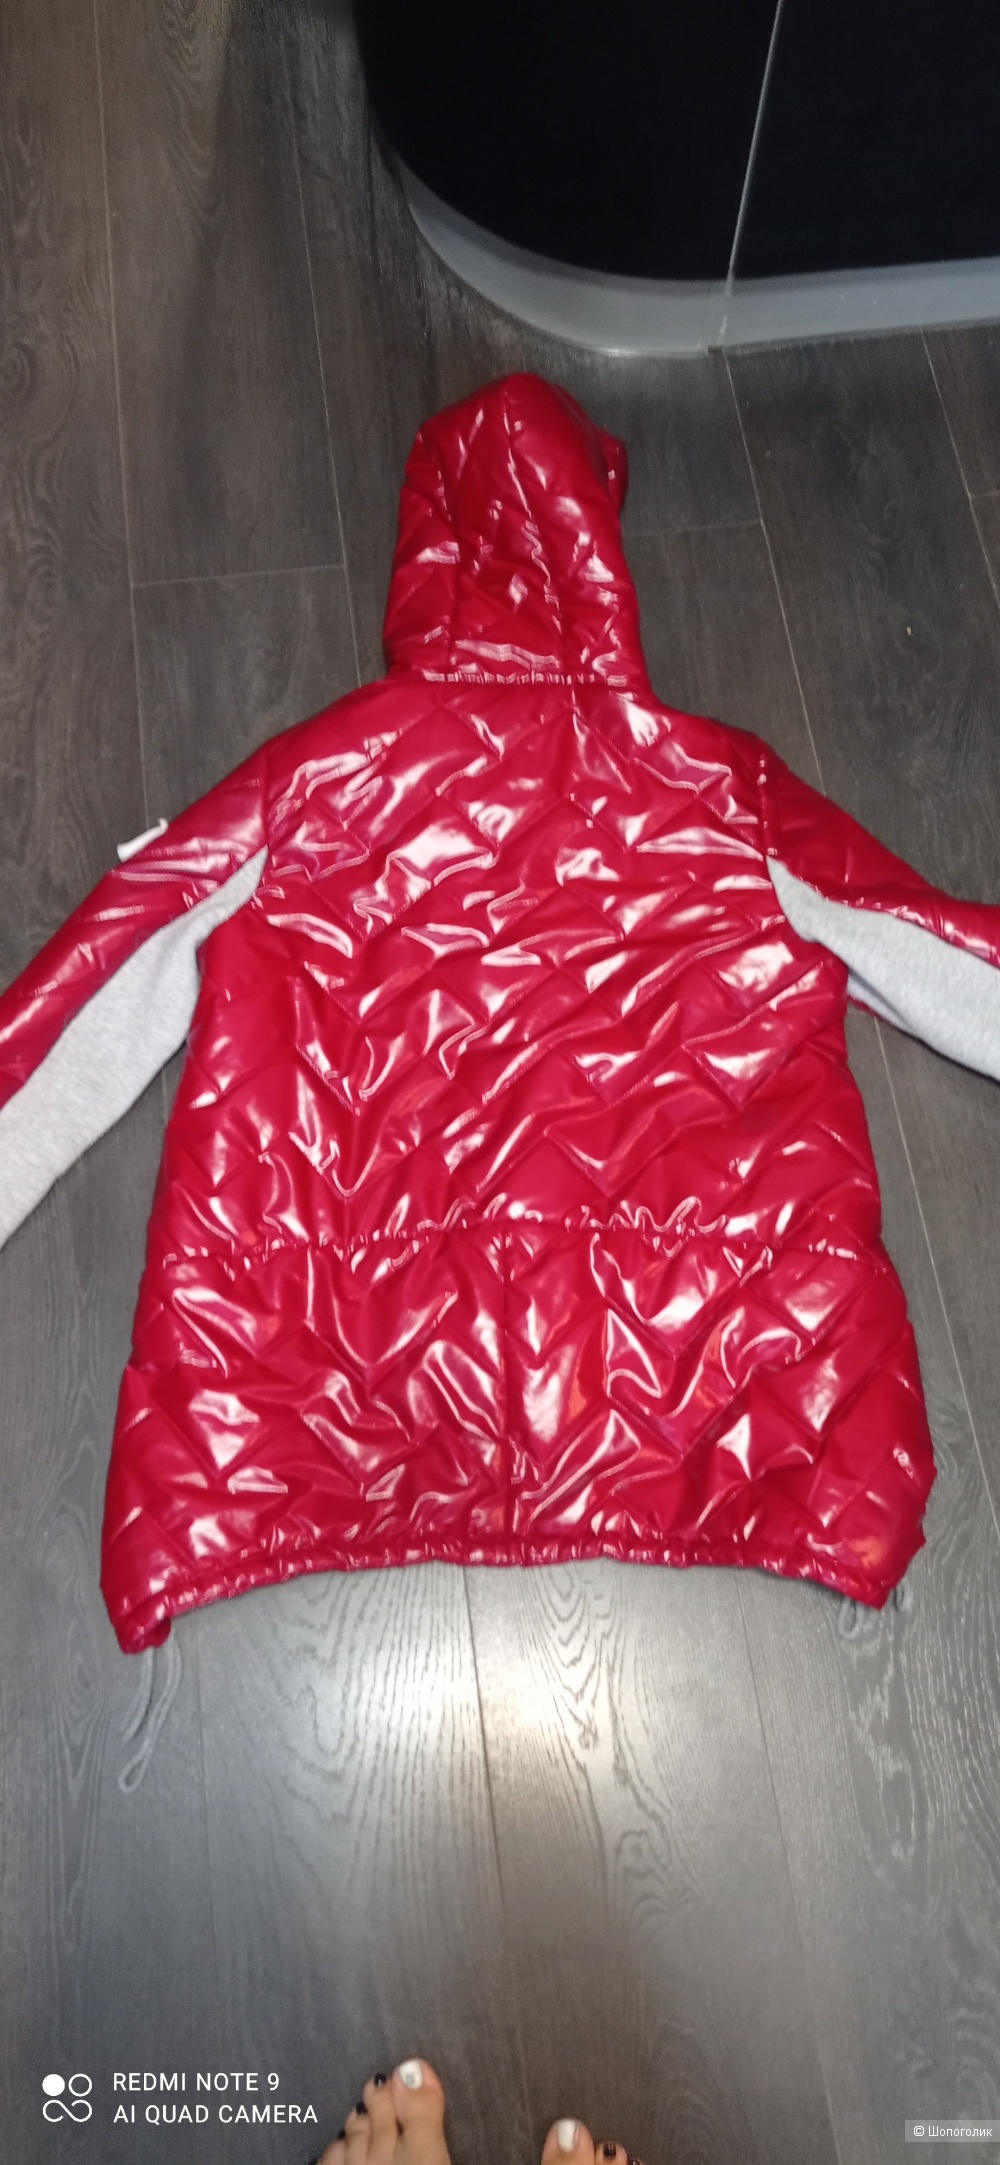 Куртка Ingrosso размер 46